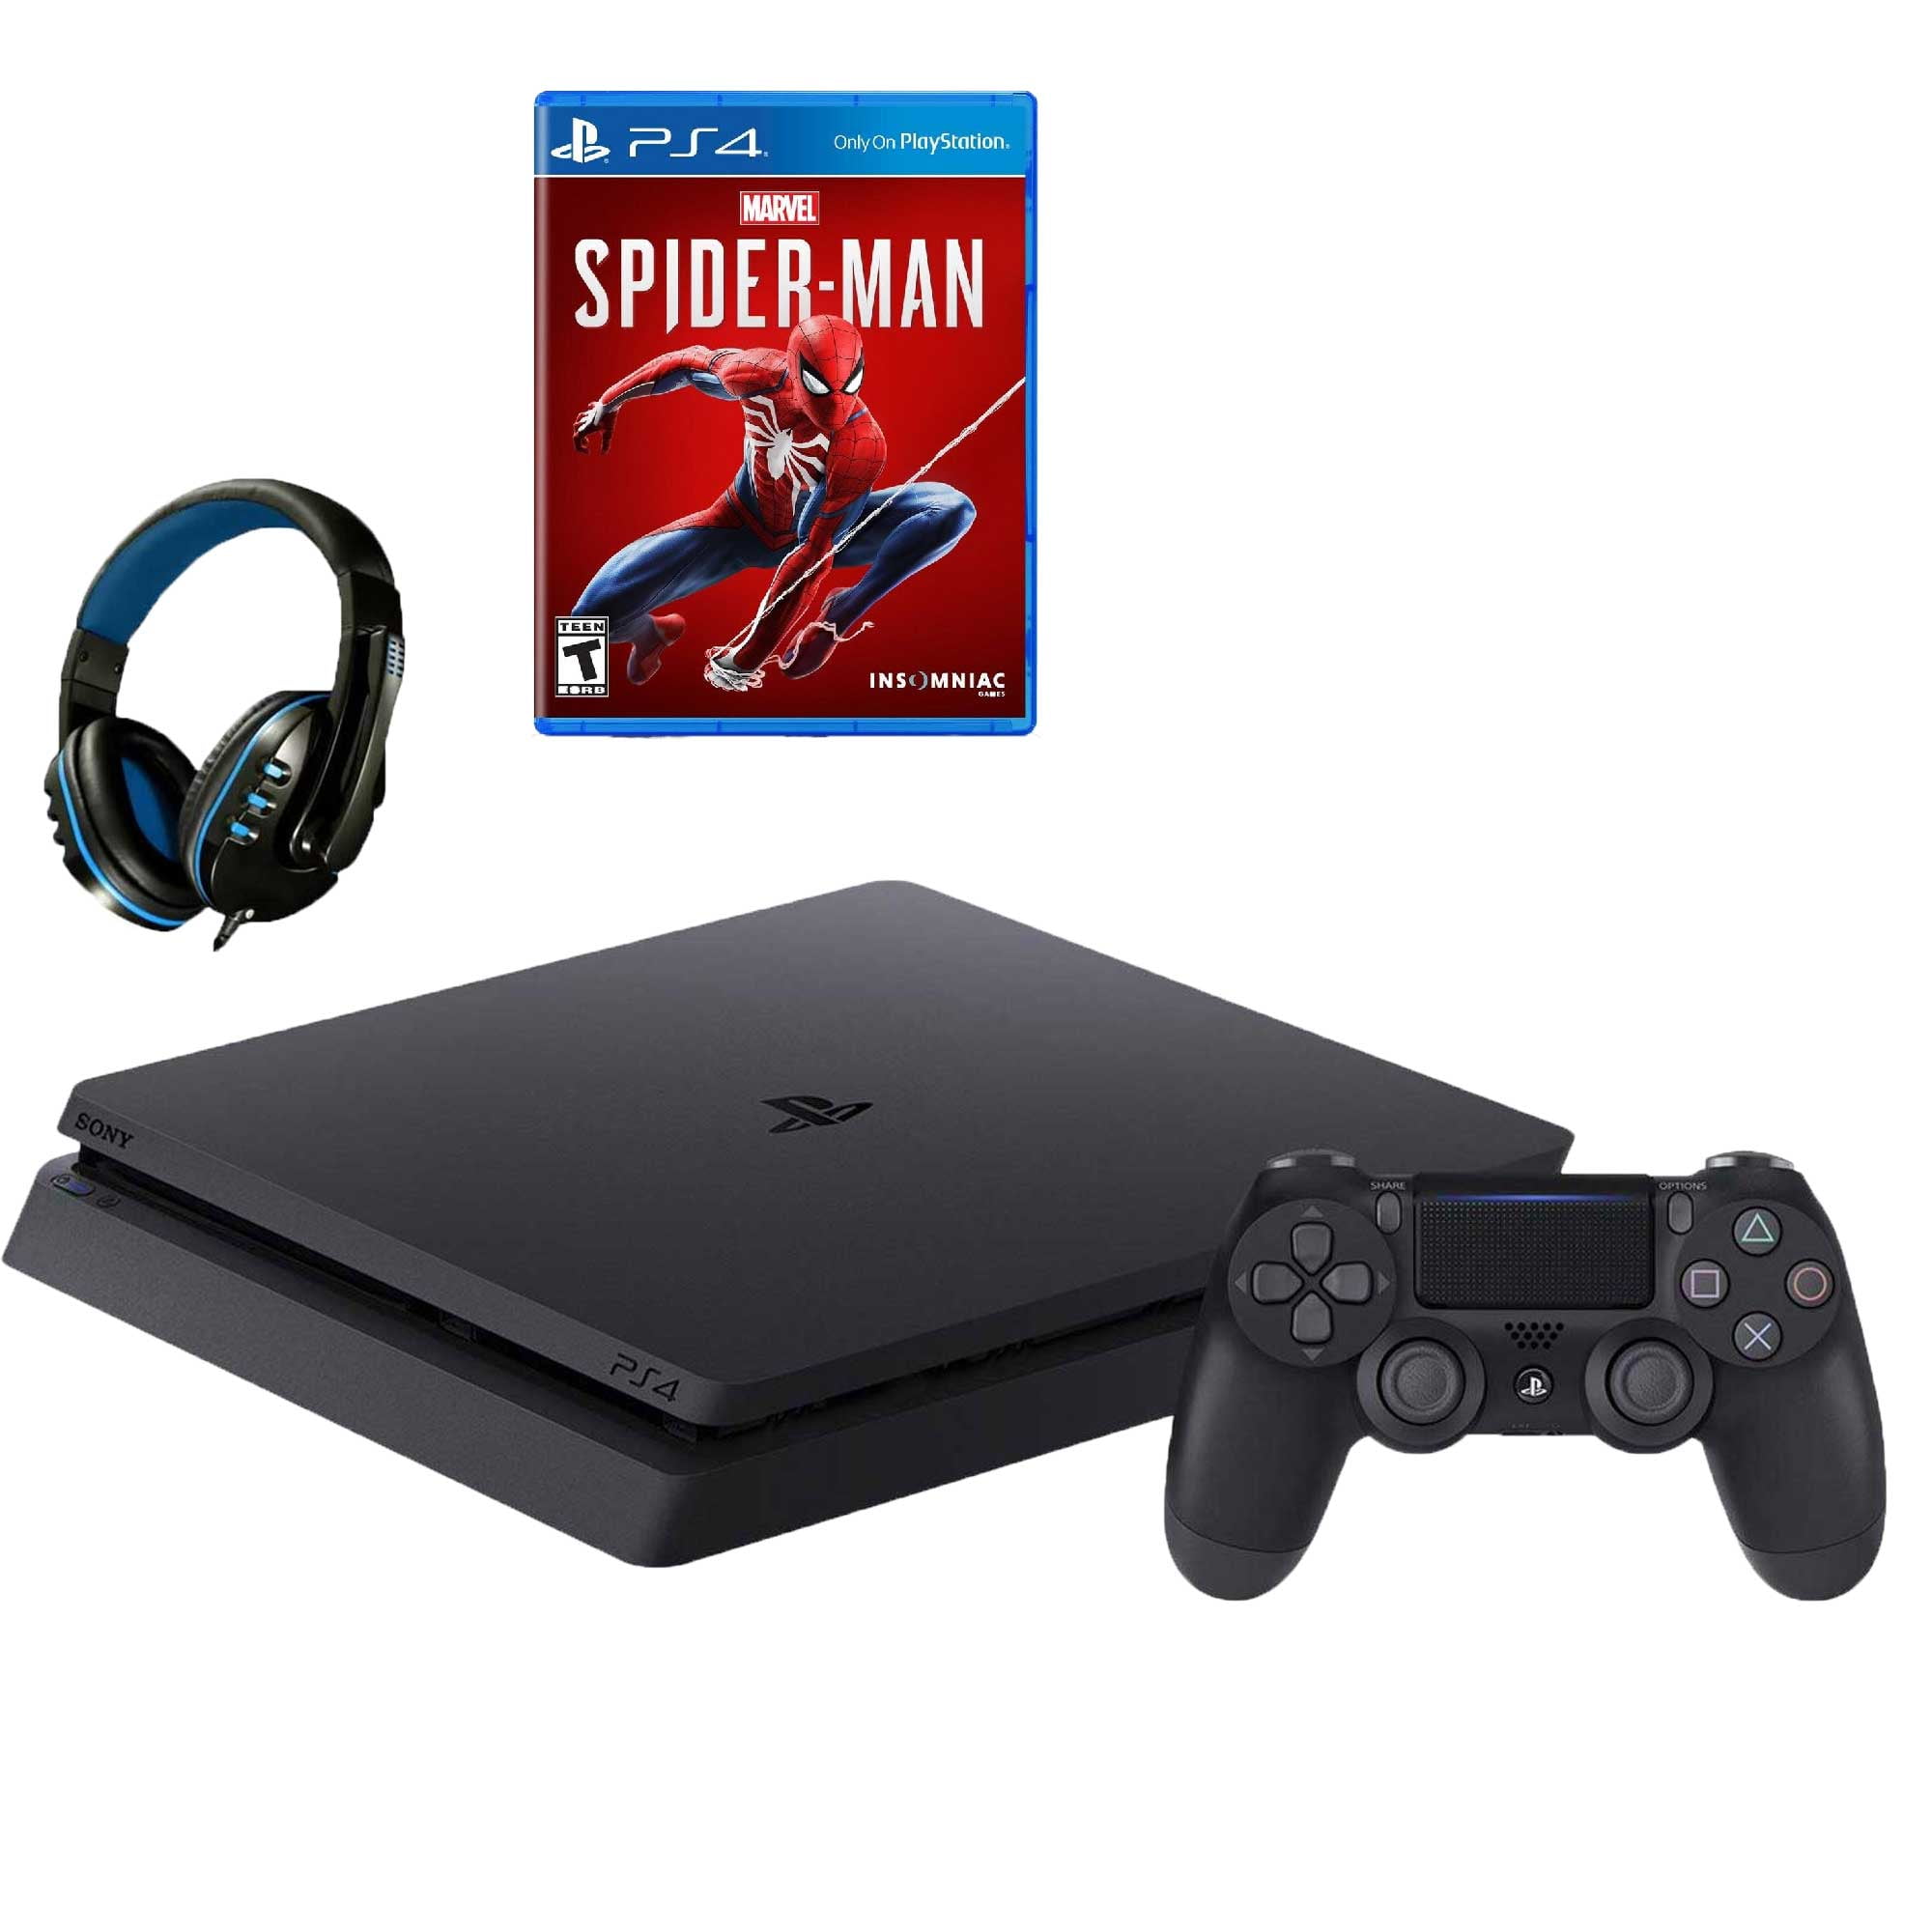 kobling Far Bi Sony 2215A PlayStation 4 Slim 500GB Gaming Console Black with Spider-Manr  Game BOLT AXTION Bundle Used - Walmart.com